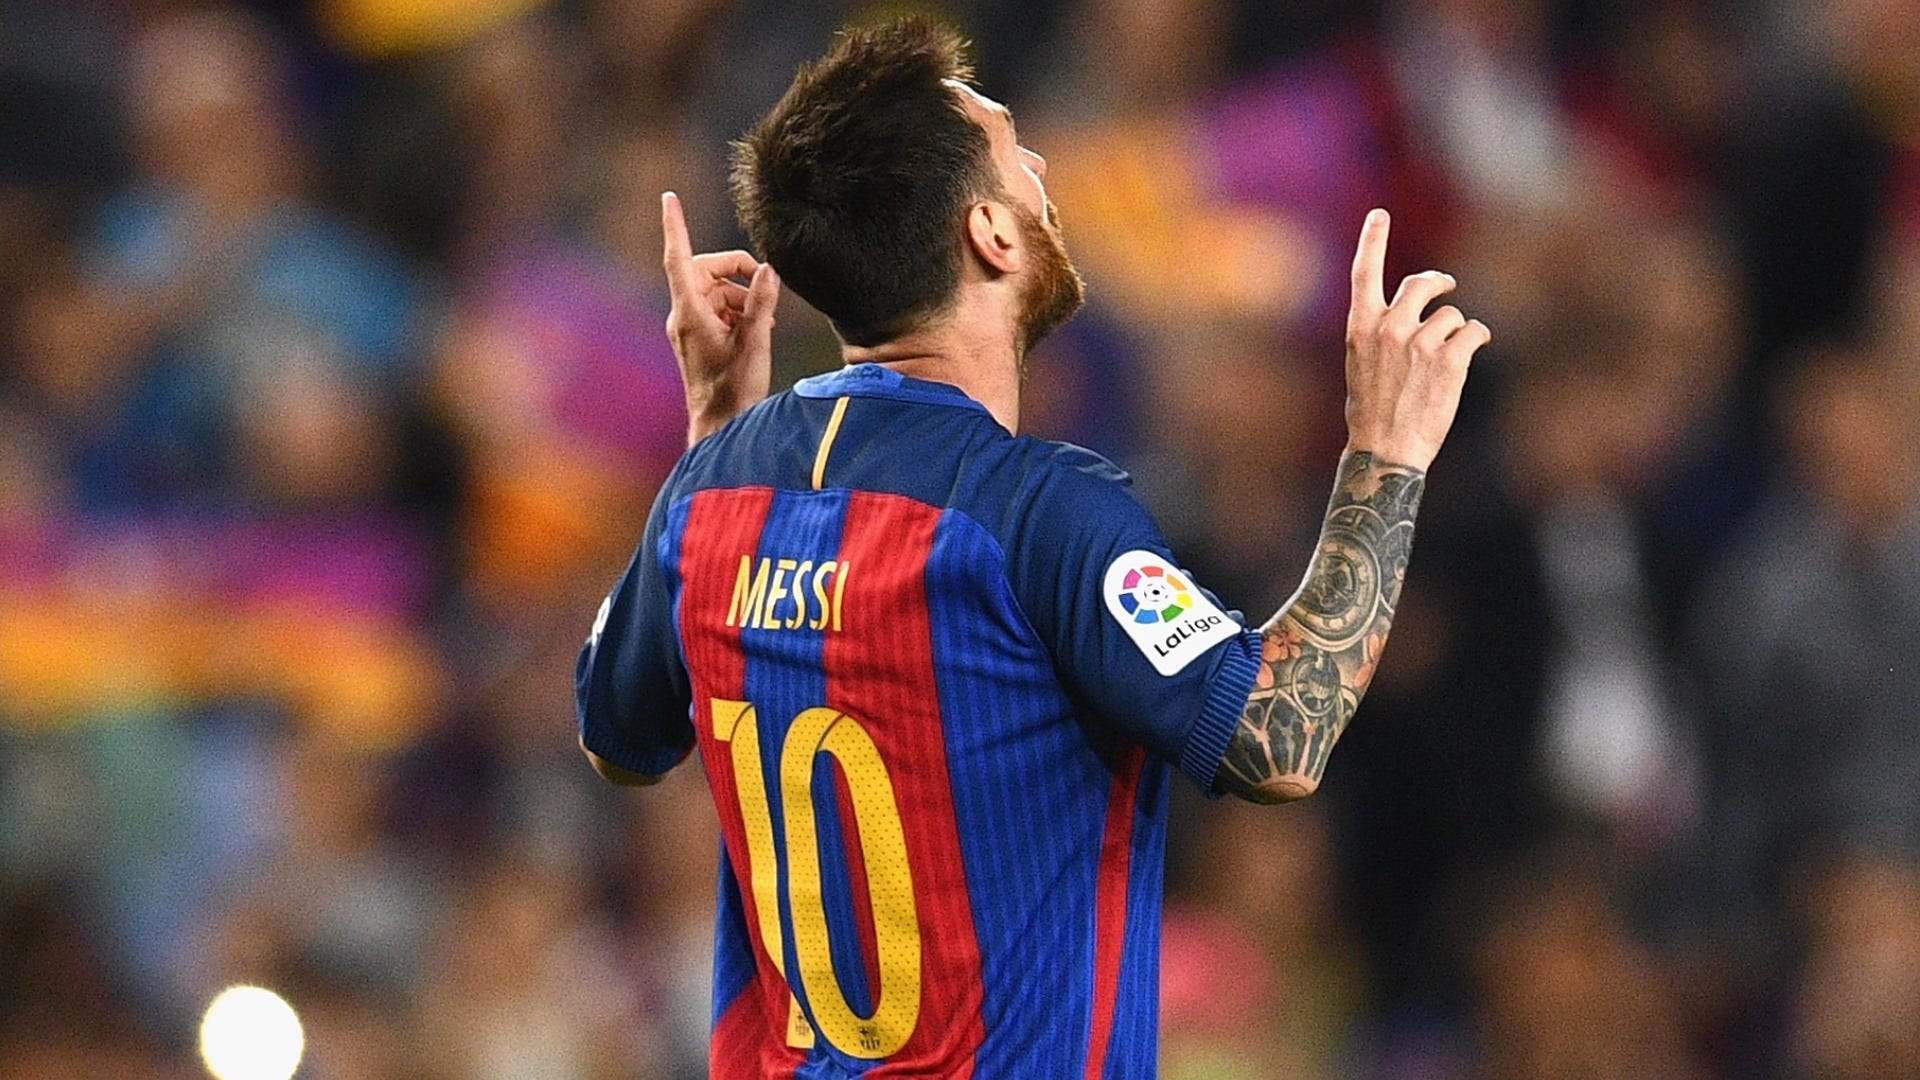 Vua phá lưới La Liga 2016-17 - Messi luôn là cái tên được nhắc đến khi nhắc đến danh hiệu này. Với những bức ảnh đẹp về siêu sao người Argentina này, bạn sẽ nhìn thấy ngay sự vượt trội, tài năng và sự xuất sắc của anh. Hãy truy cập ngay để xem và cảm nhận!